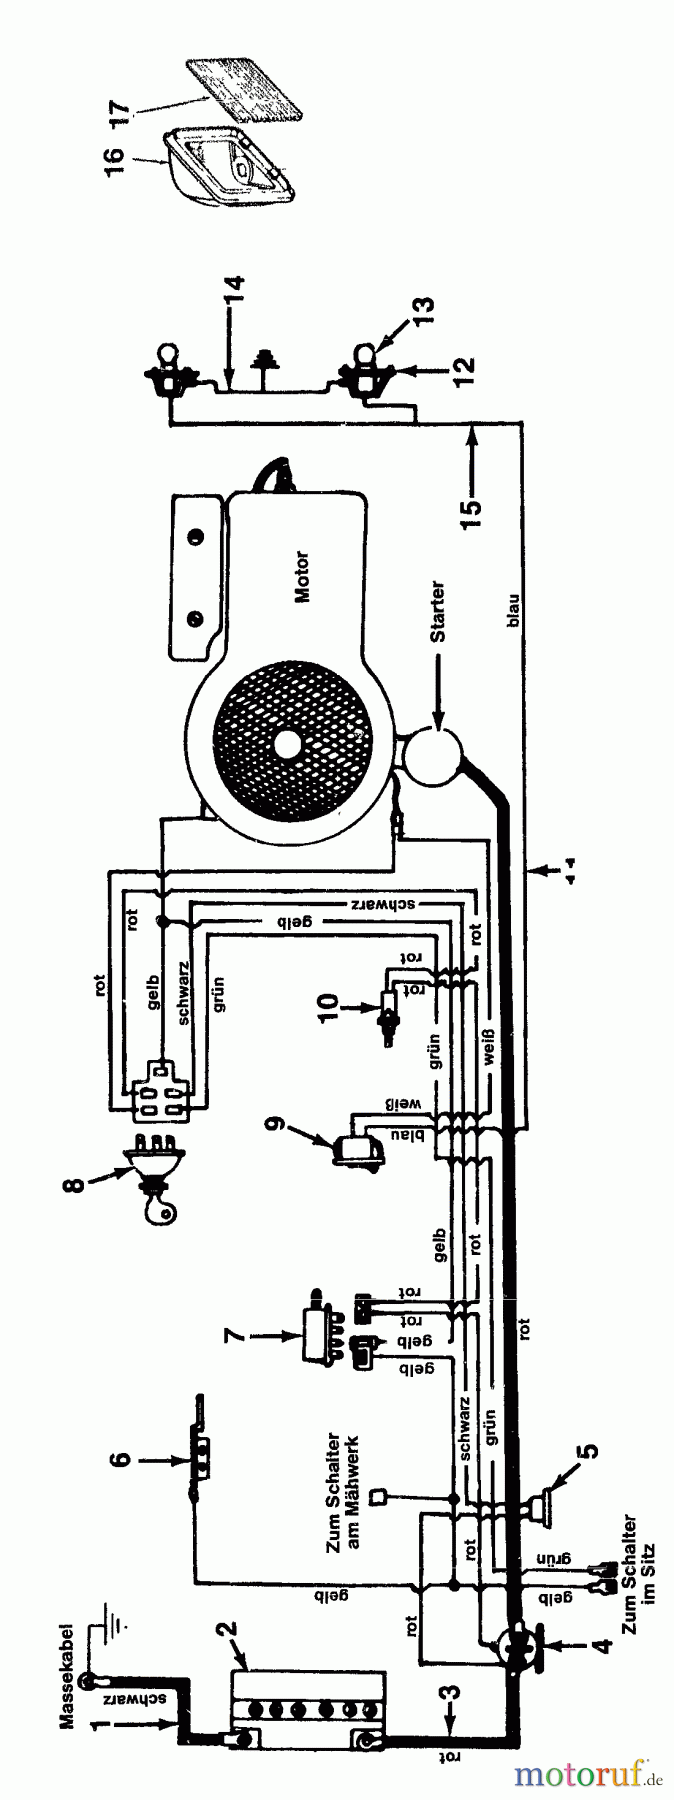  MTD Rasentraktoren 11/81 137-3320  (1987) Schaltplan Vanguard